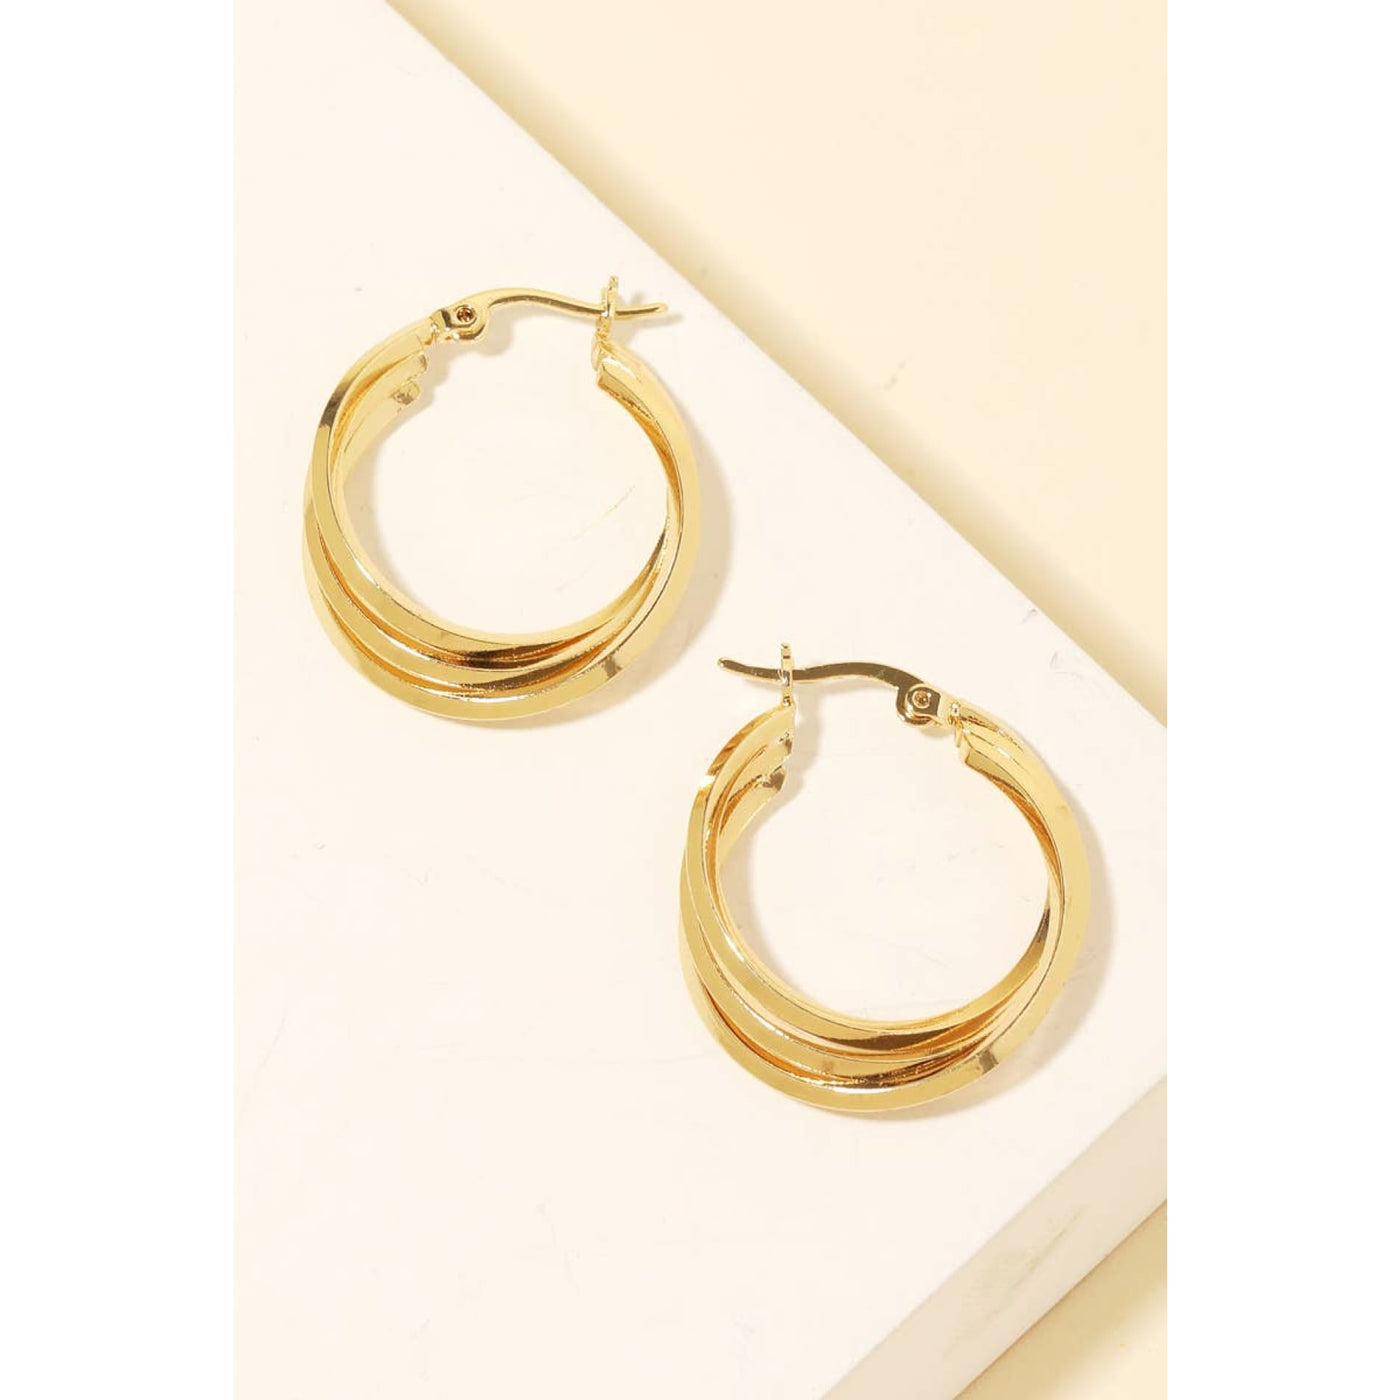 Triple Interlinked Latch Hoop Earrings - Gold - 190 Jewelry